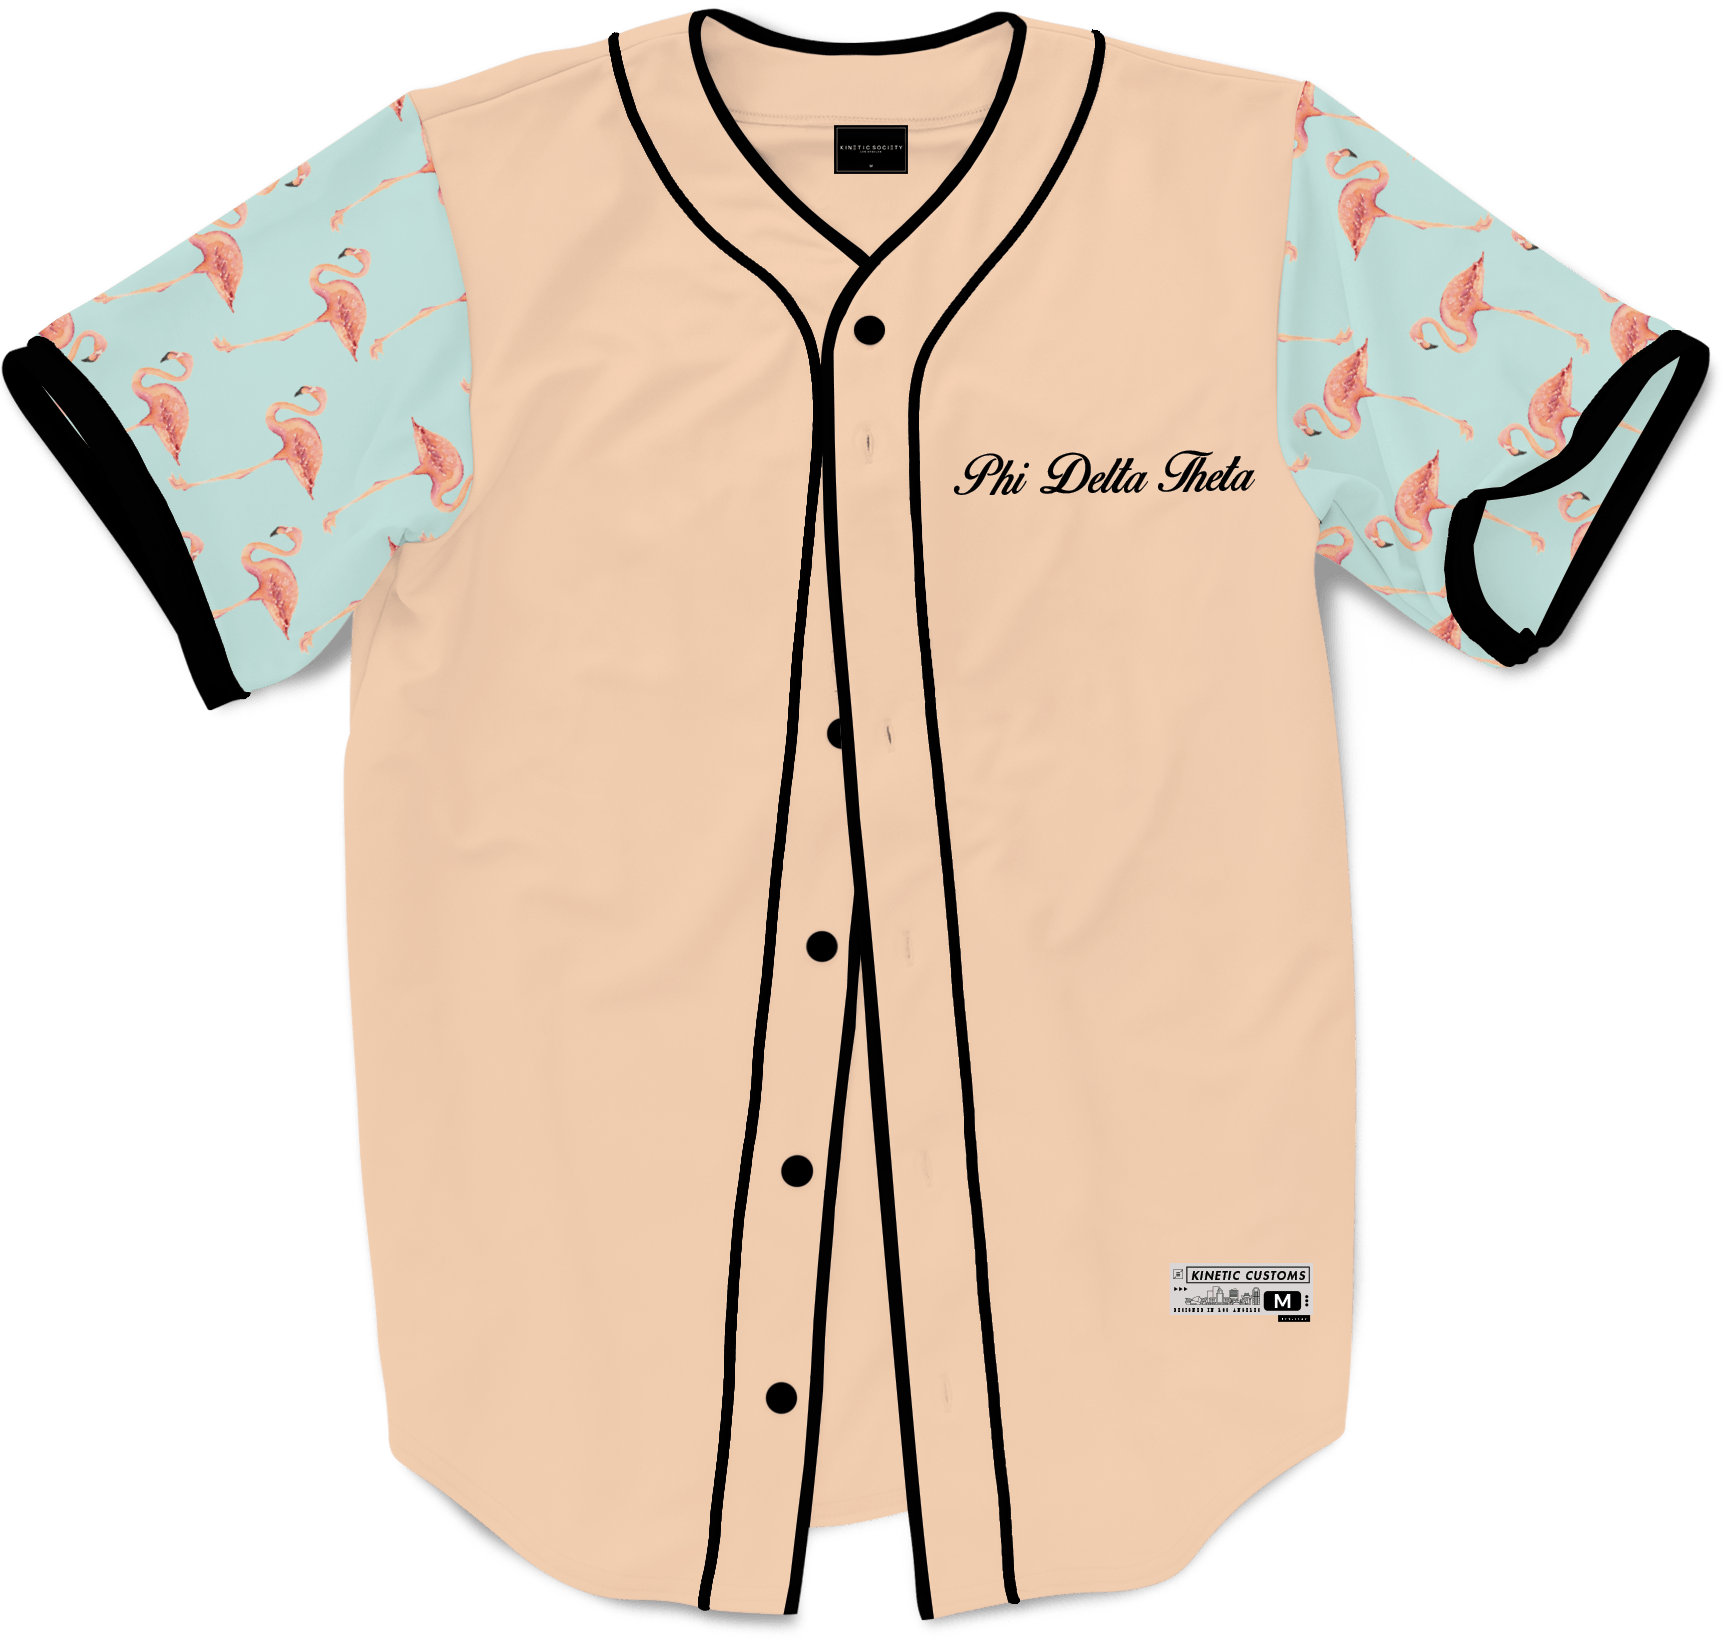 Phi Delta Theta - Flamingo Fam Baseball Jersey - Kinetic Society